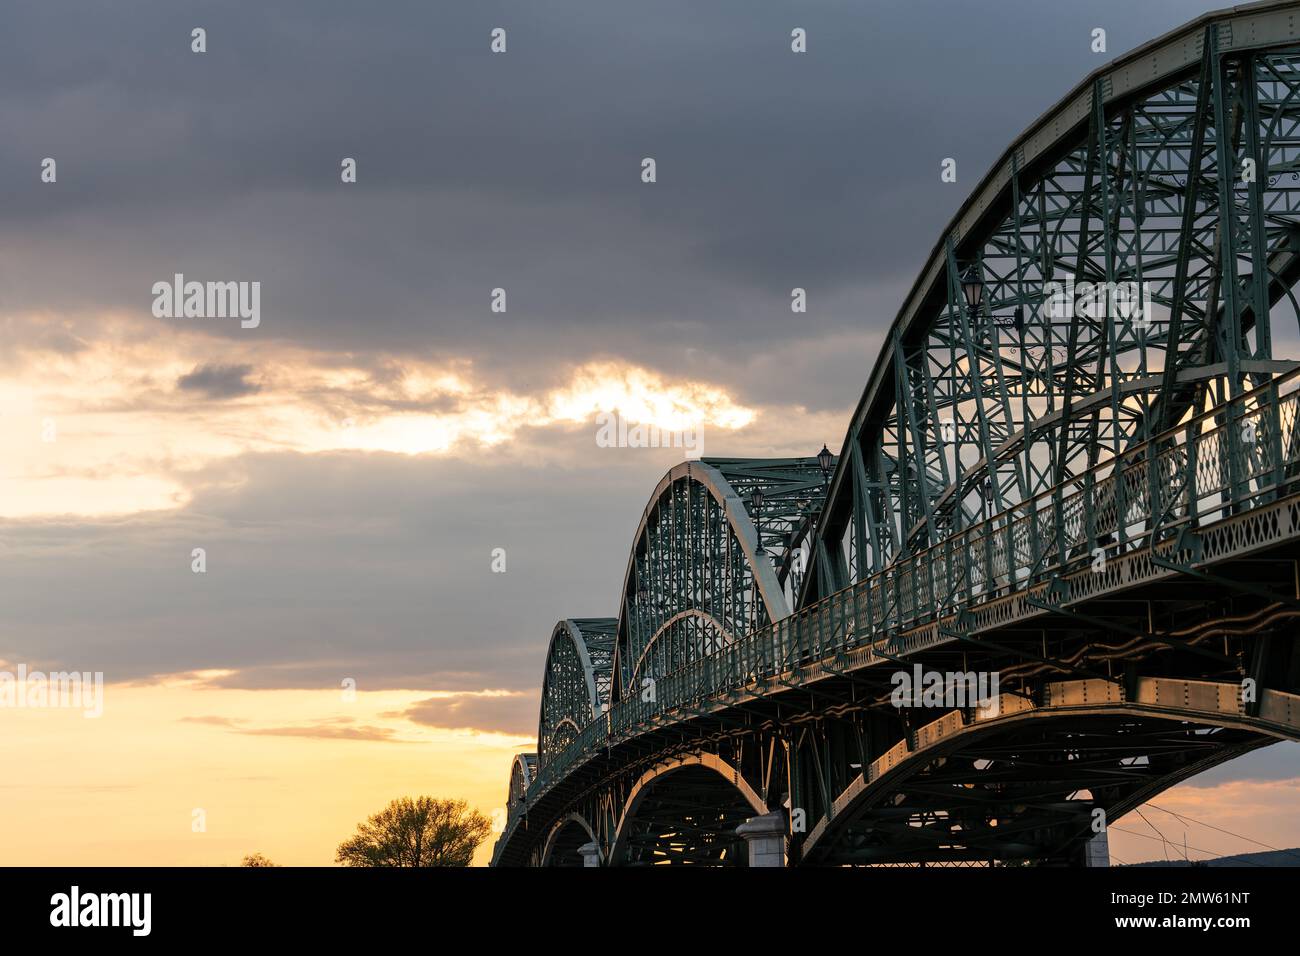 Bridge across the river Danube in Eszergom Stock Photo